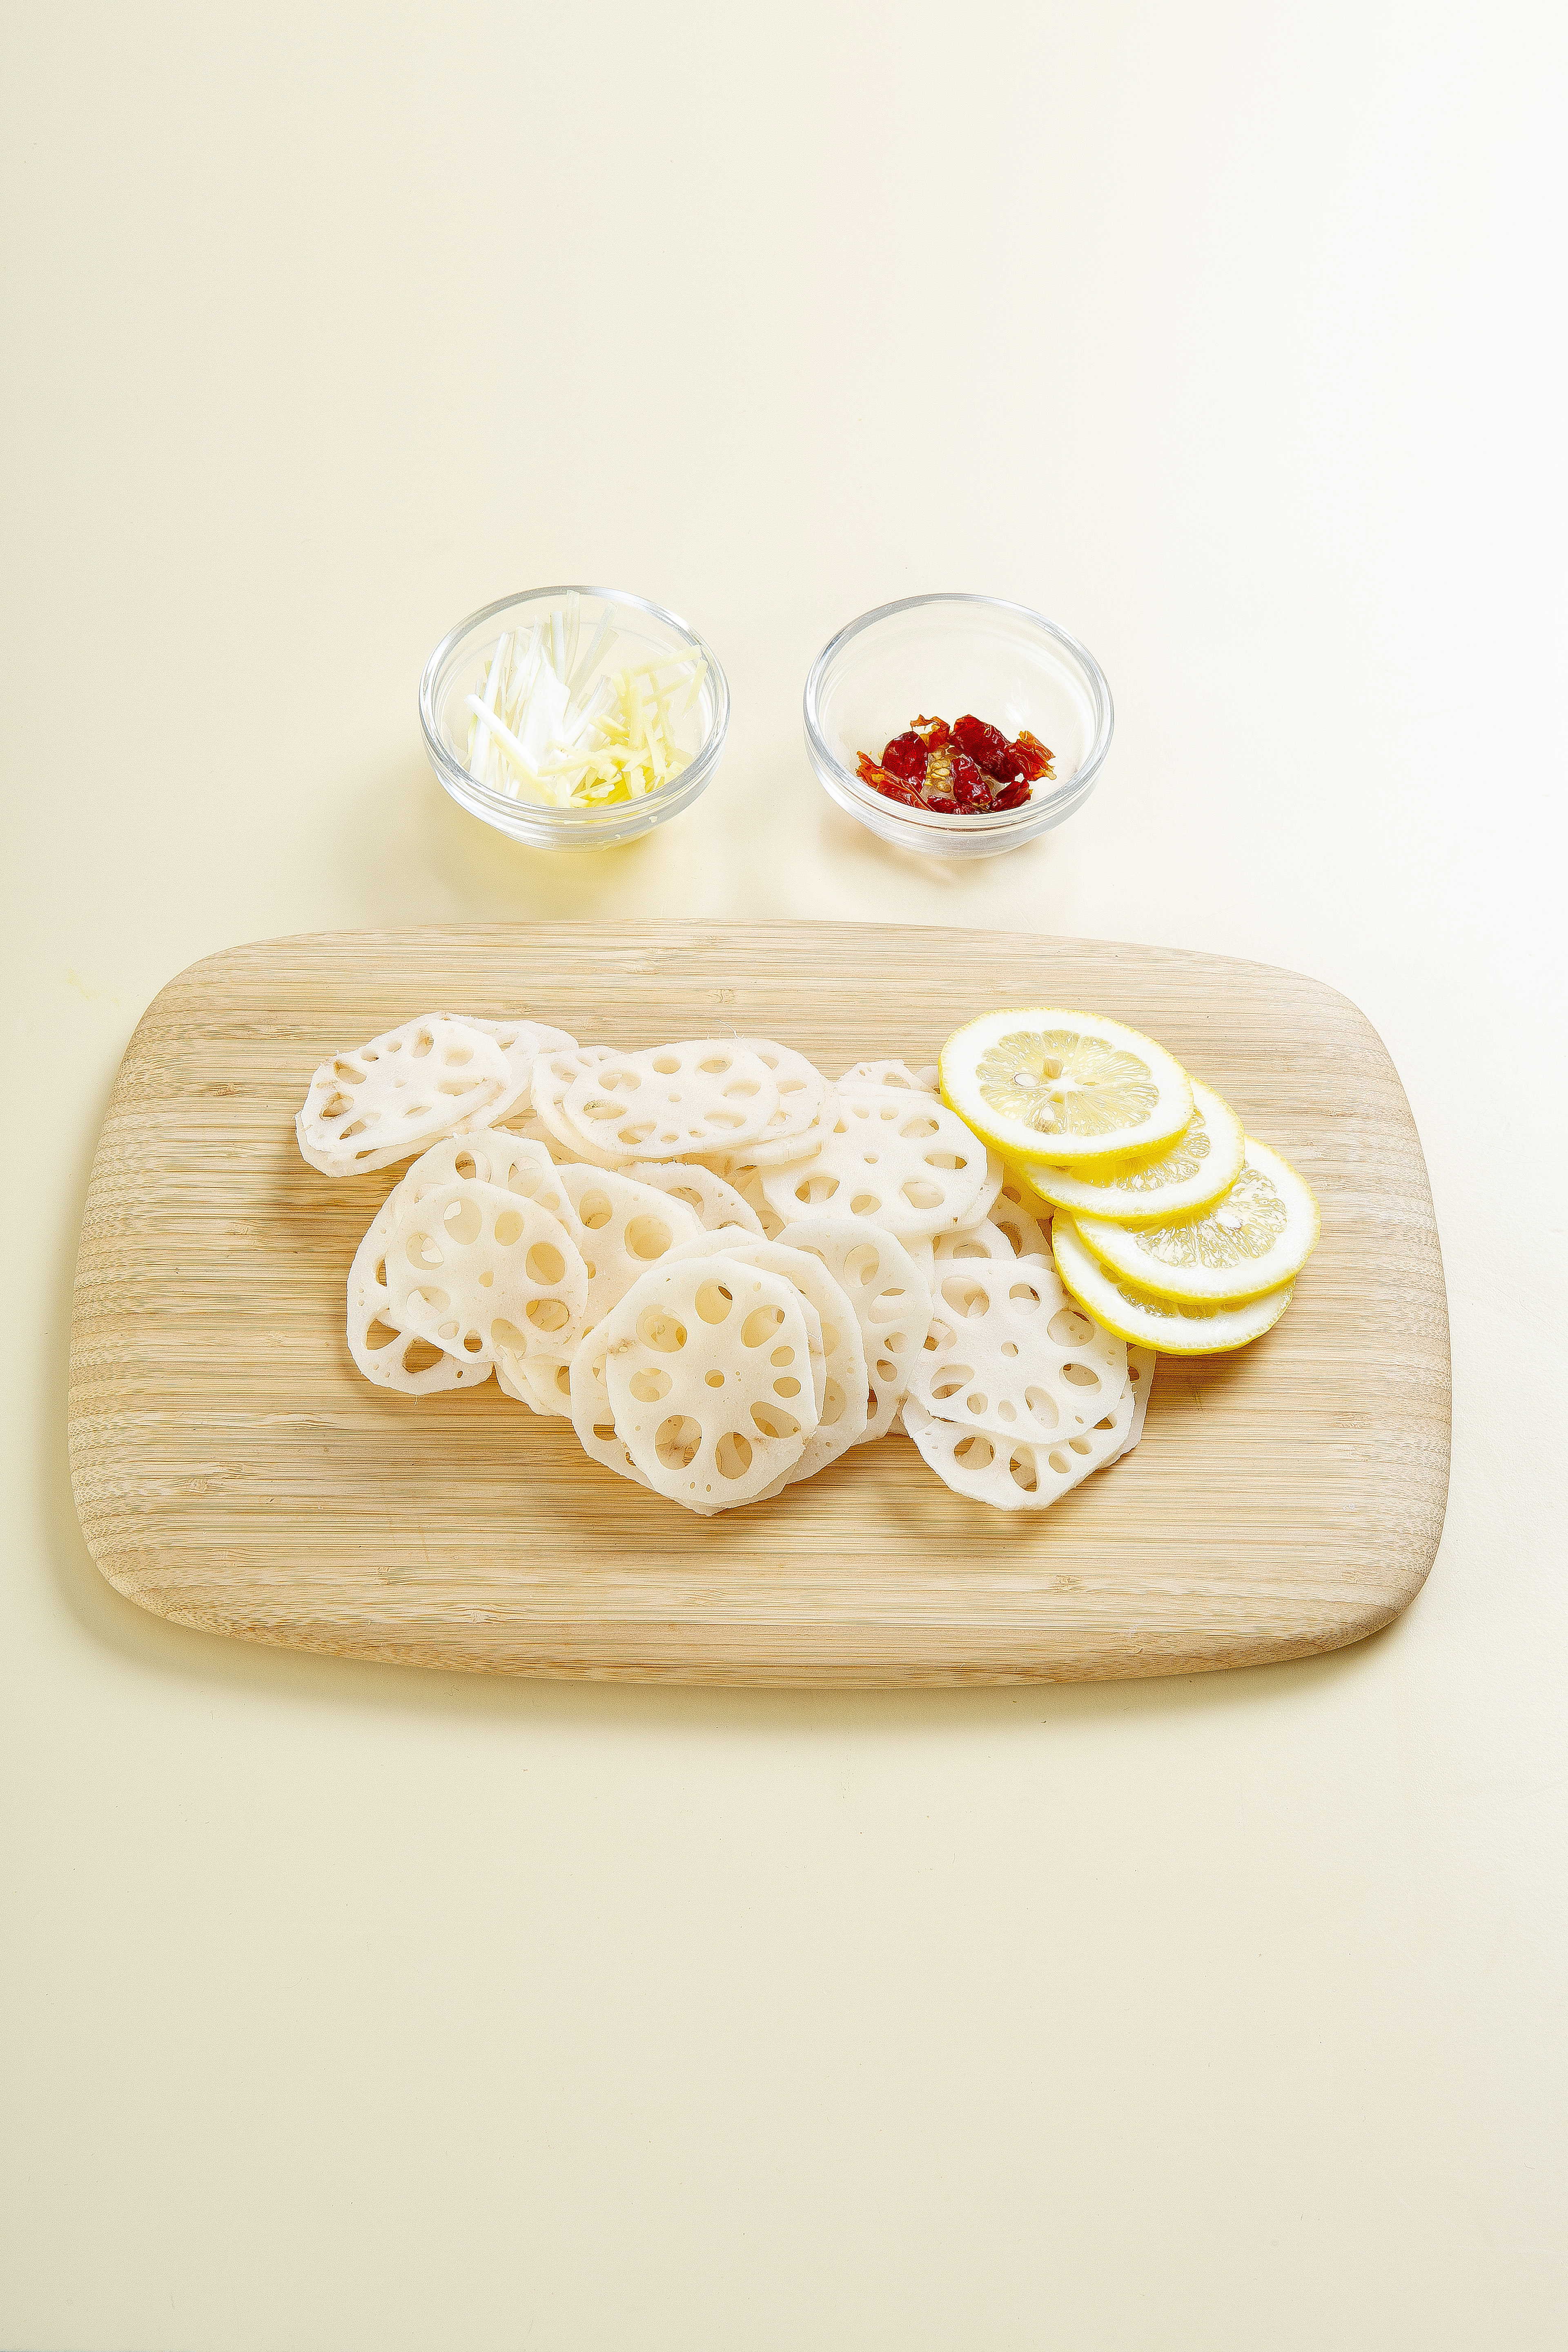 1.연근은 껍집을 벗기고 얇게 슬라이스한다. 대파와 생강을 채 썰고 베트남 고추는 굵게 다진다. 양념 재료를 섞어서 설탕이 잘 녹도록 저어 주고 레몬은 얇게 슬라이스한다.